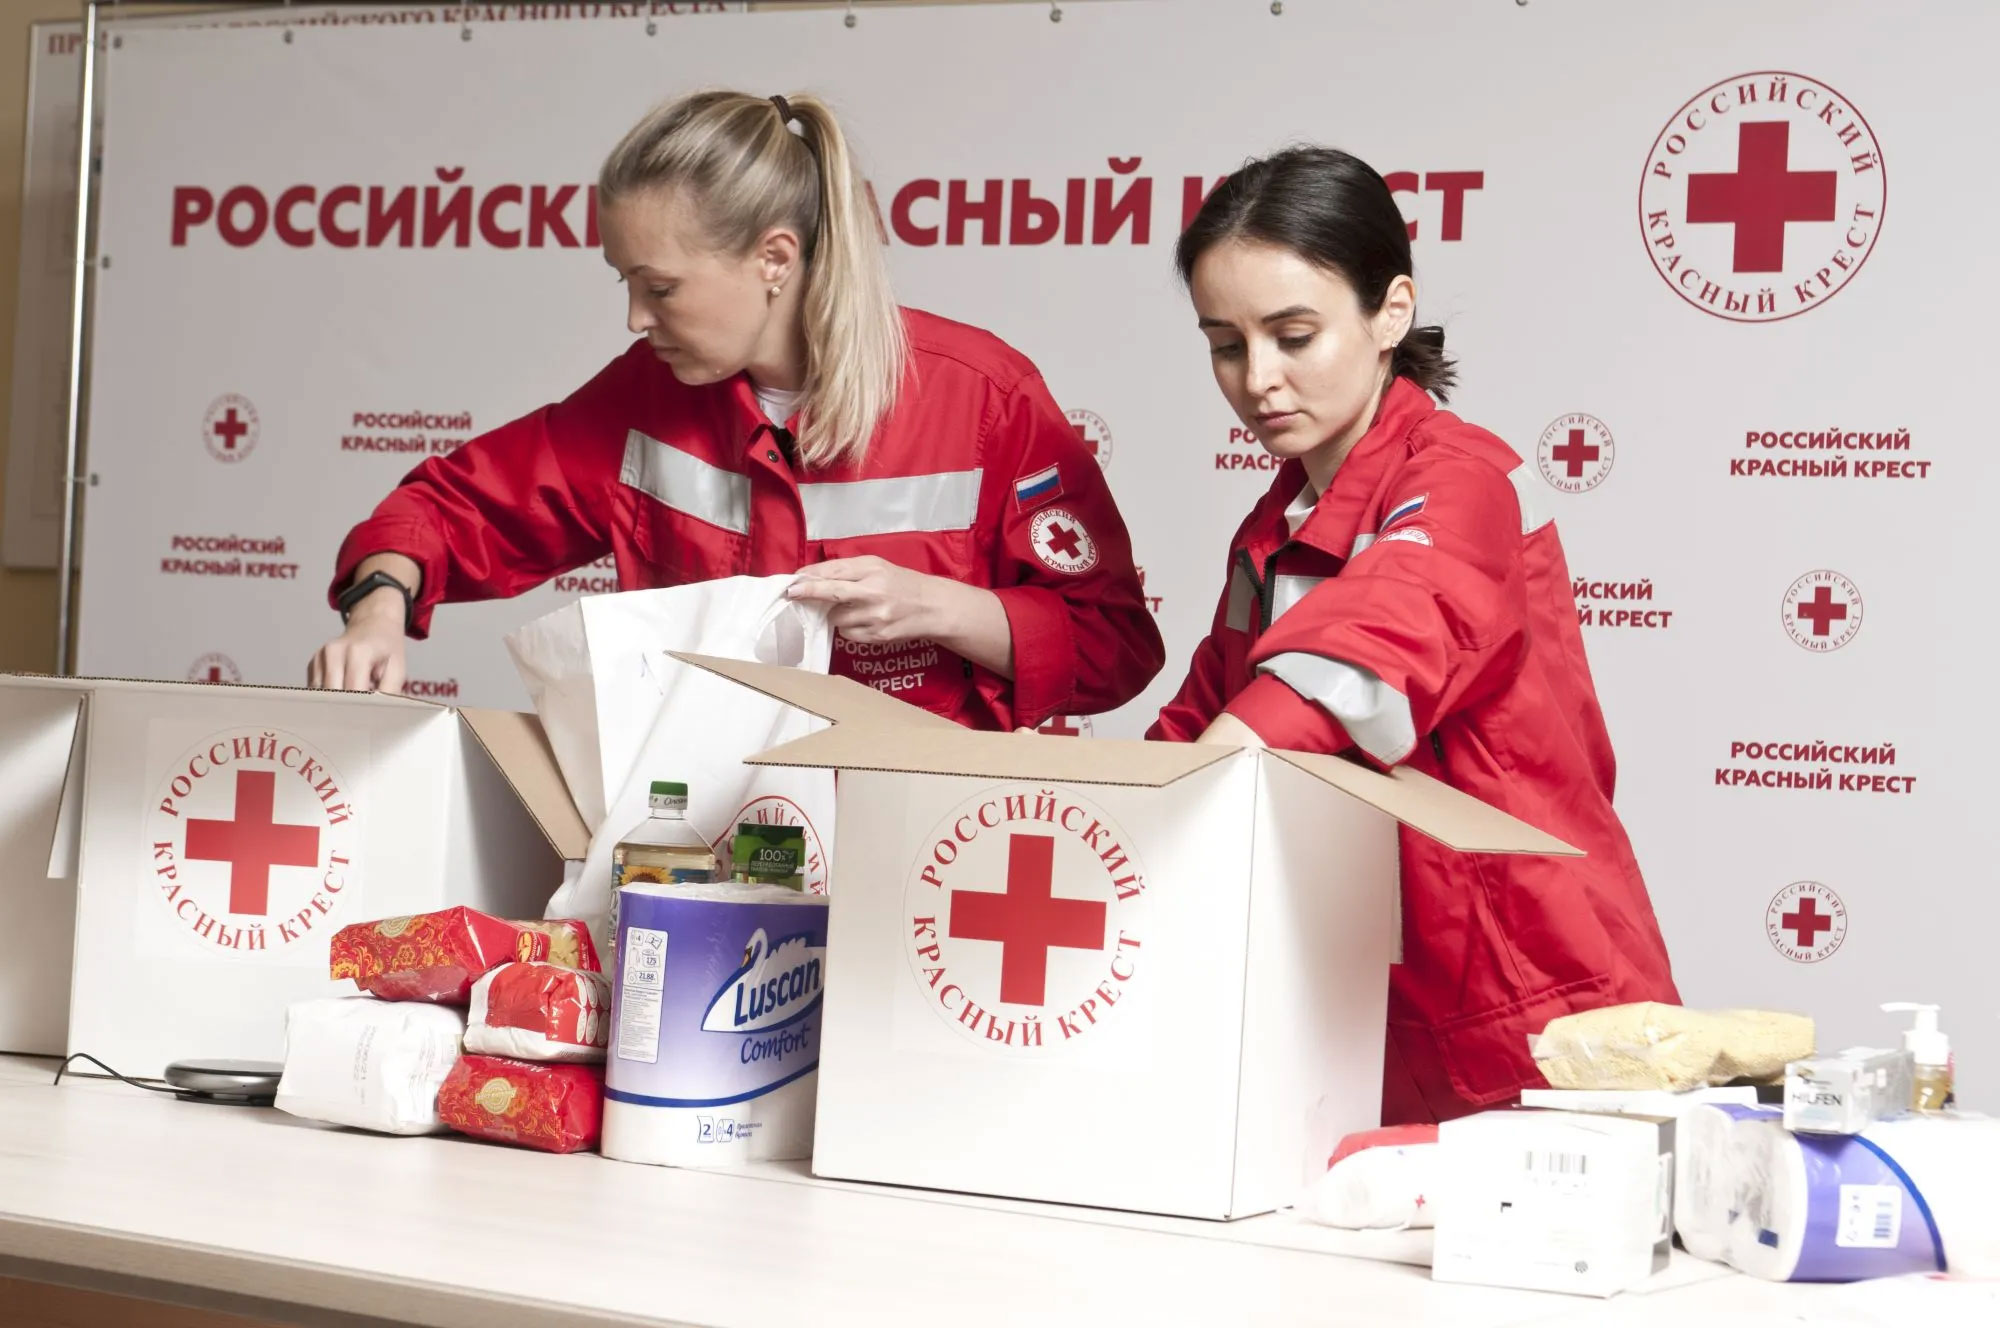 Работа в красном кресте. Российский красный крест 155 лет. РКК красный крест. Волонтеры красного Креста. Красный.